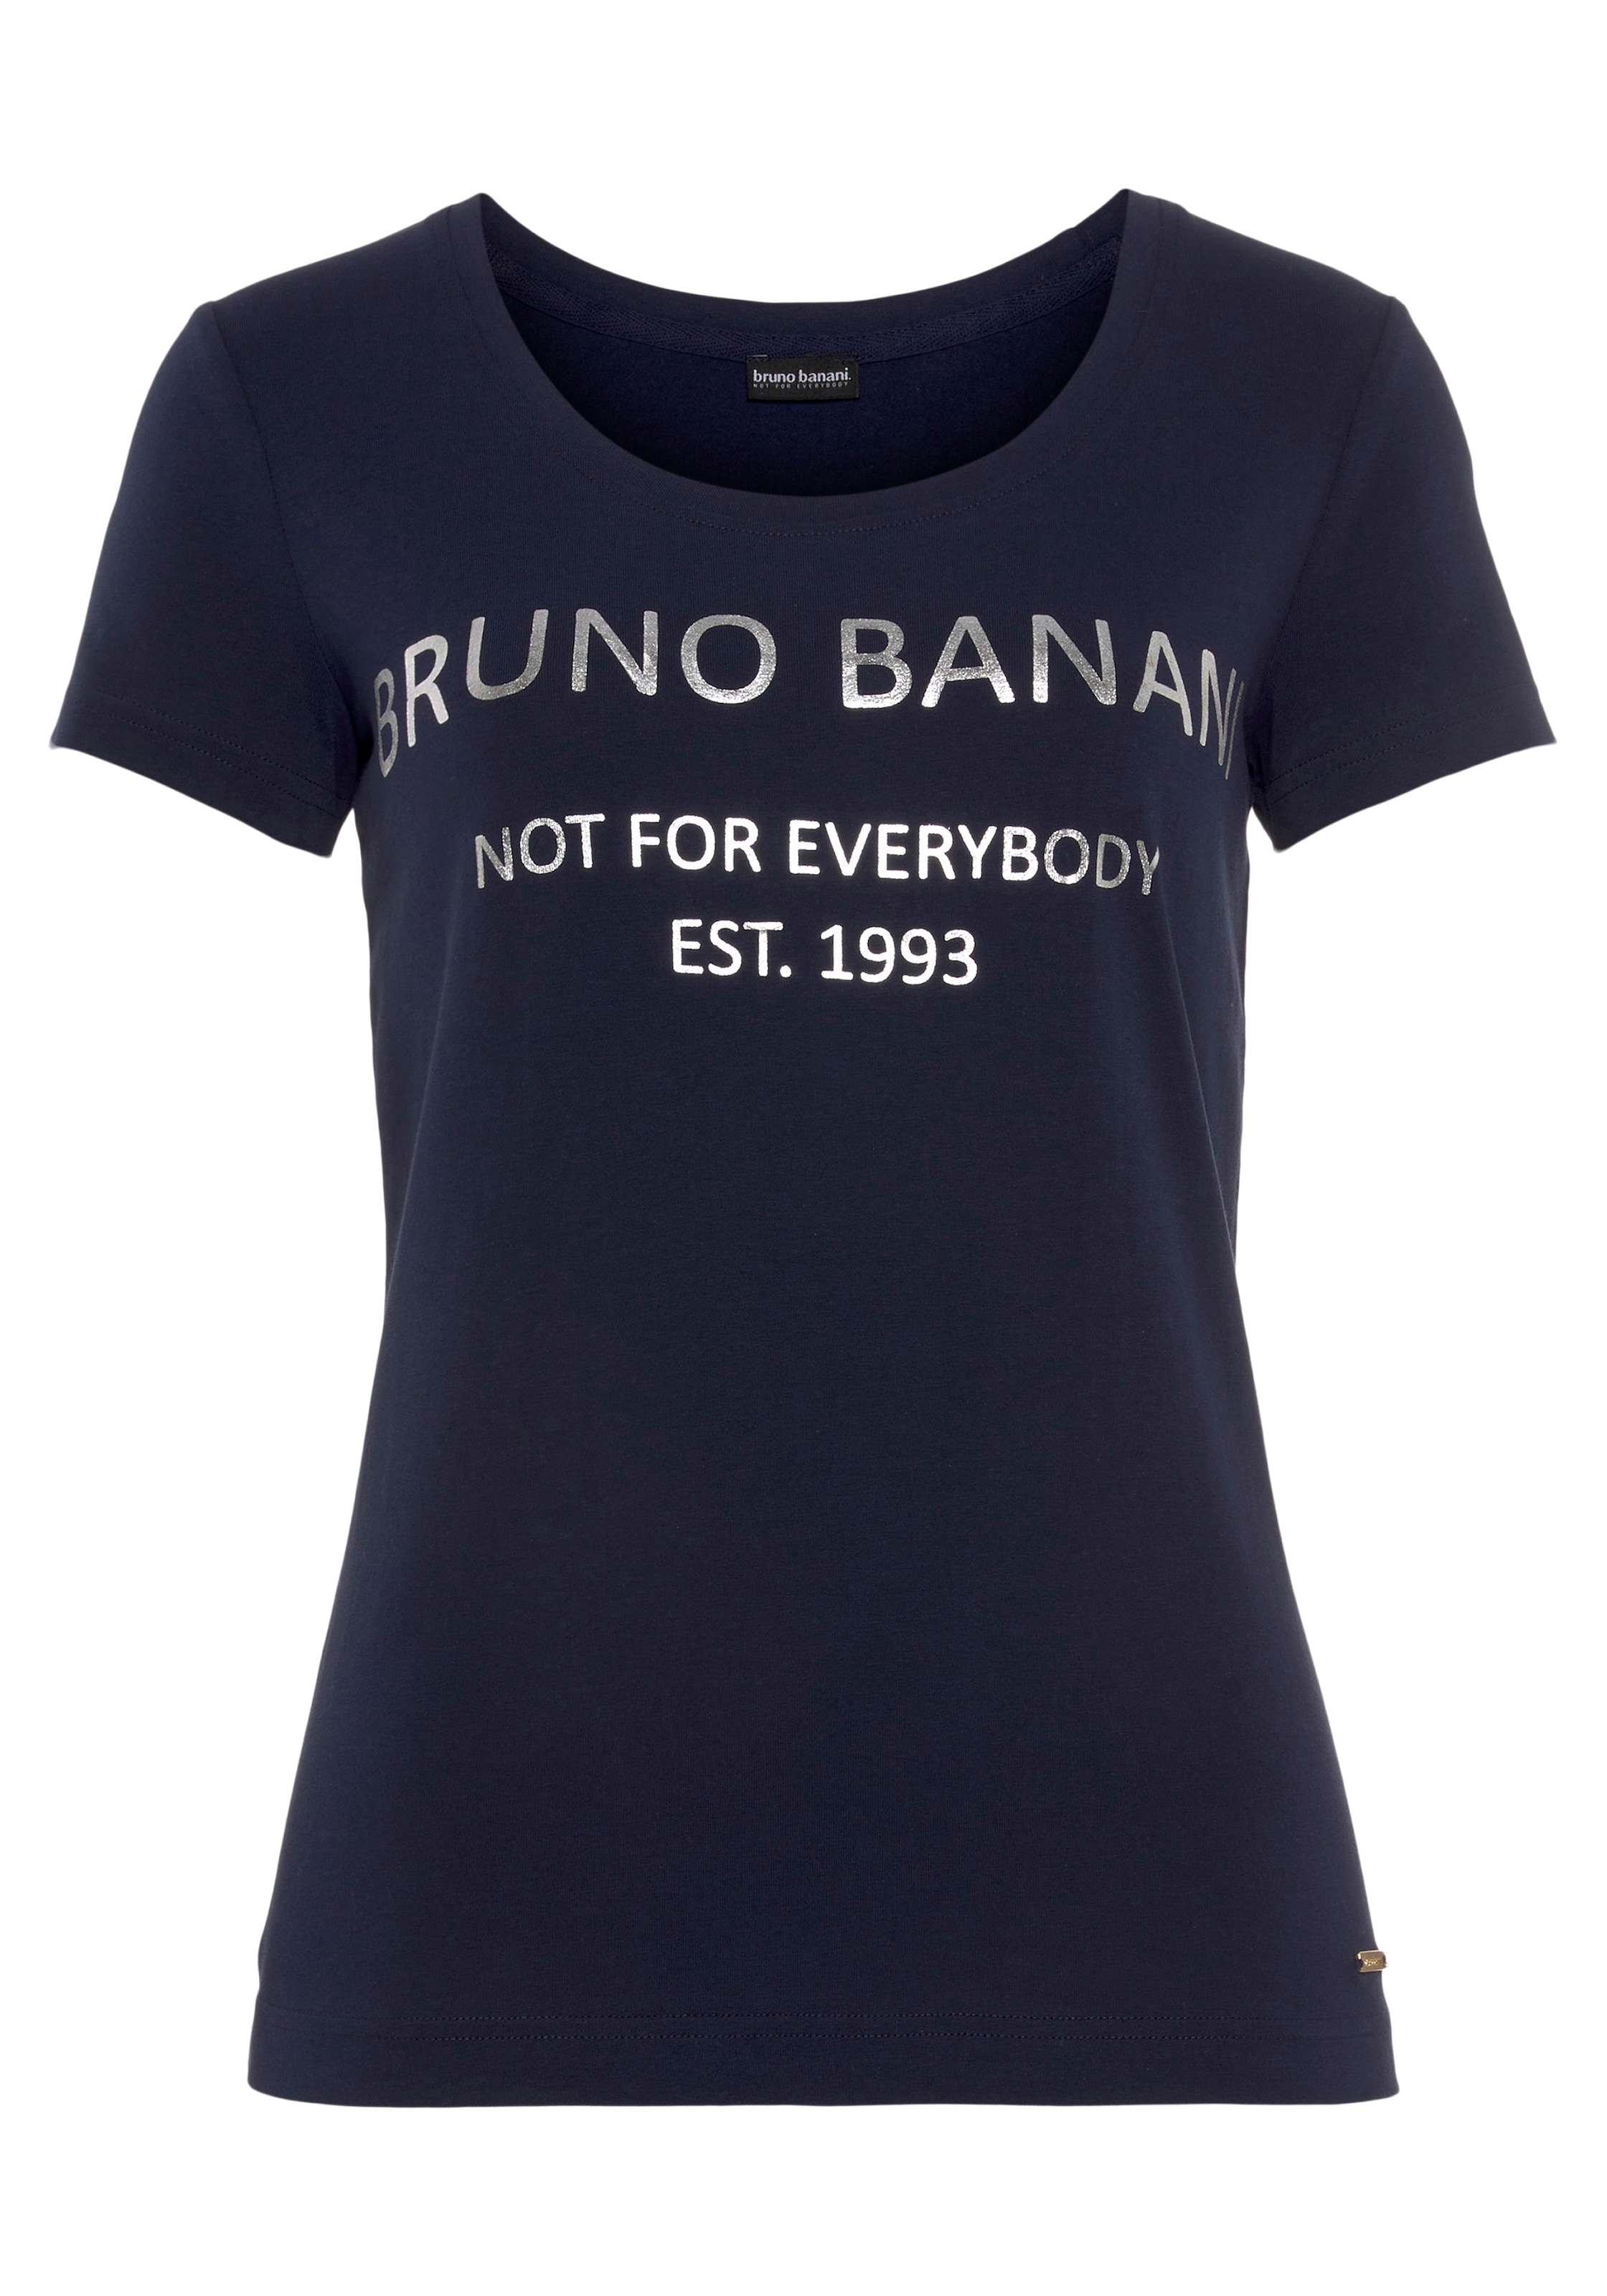 Banani Bruno OTTO bei online goldfarbenem mit T-Shirt, KOLLEKTION kaufen NEUE Logodruck